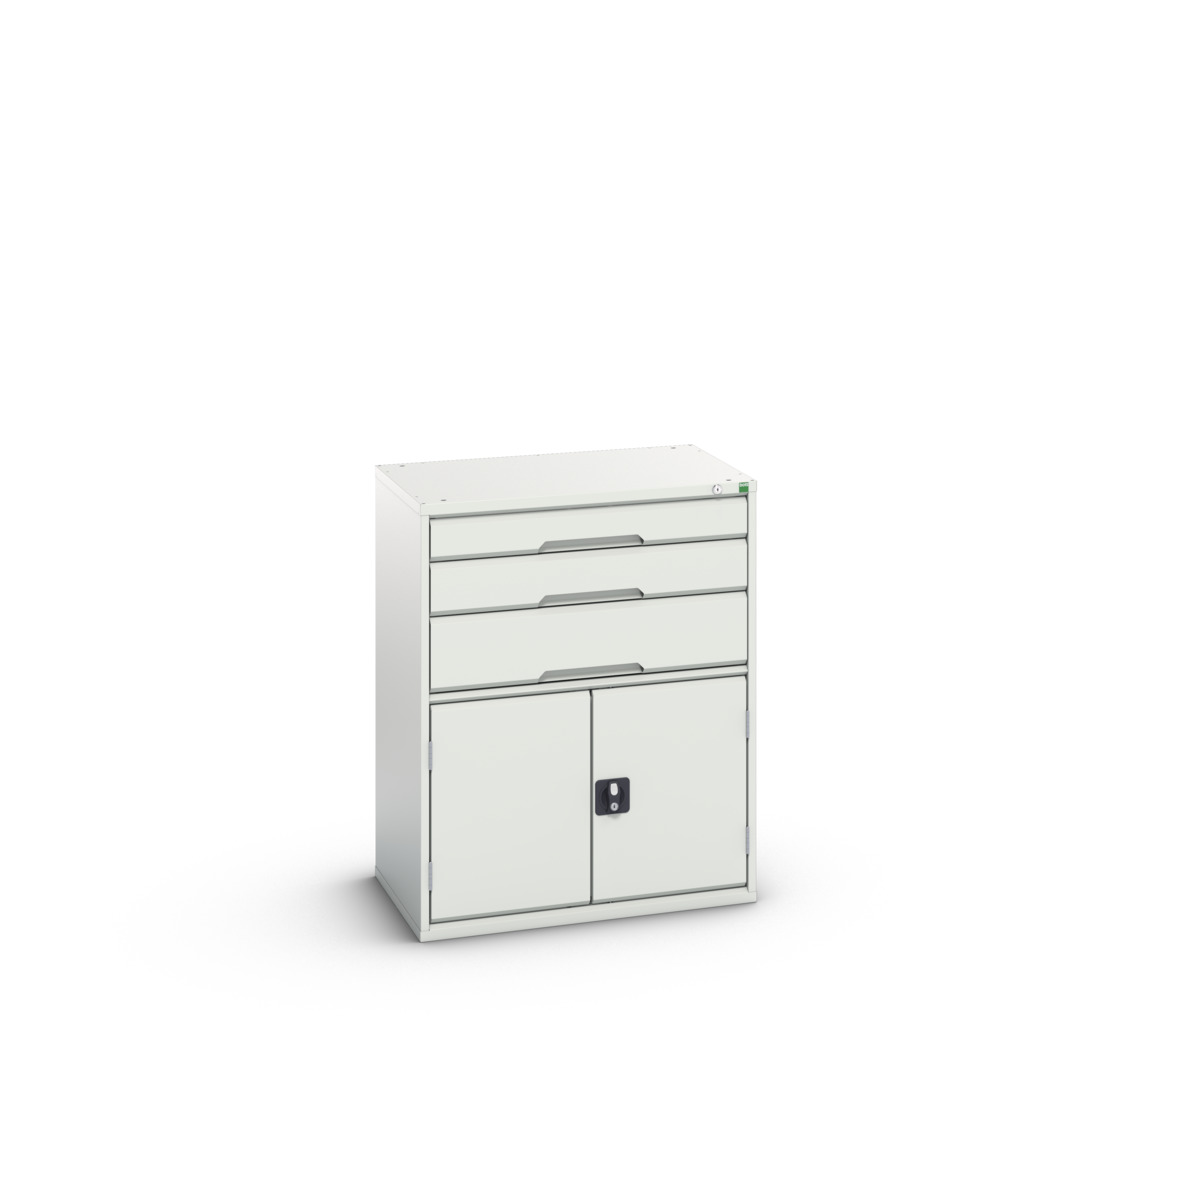 16925461.16 - verso drawer-door cabinet